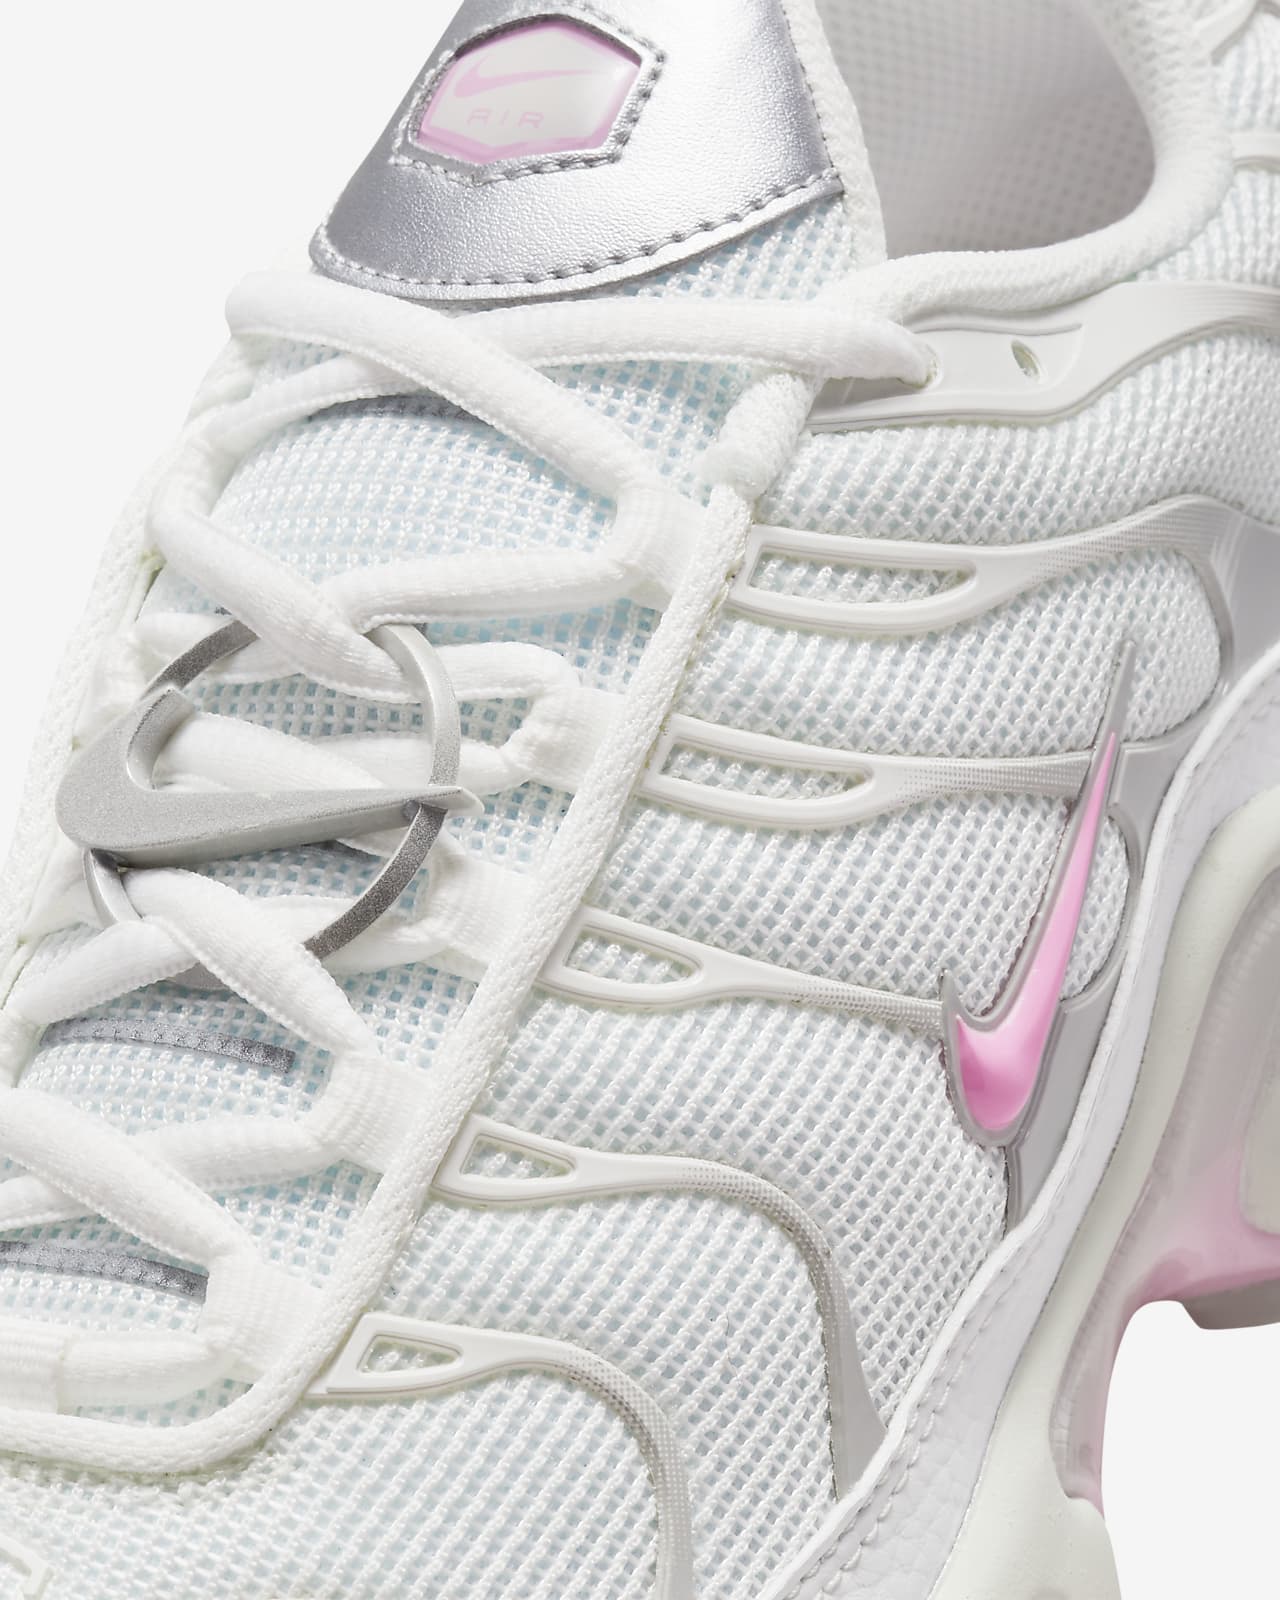 Chaussures Air Max Plus TN Blanches pour Femme. Nike LU